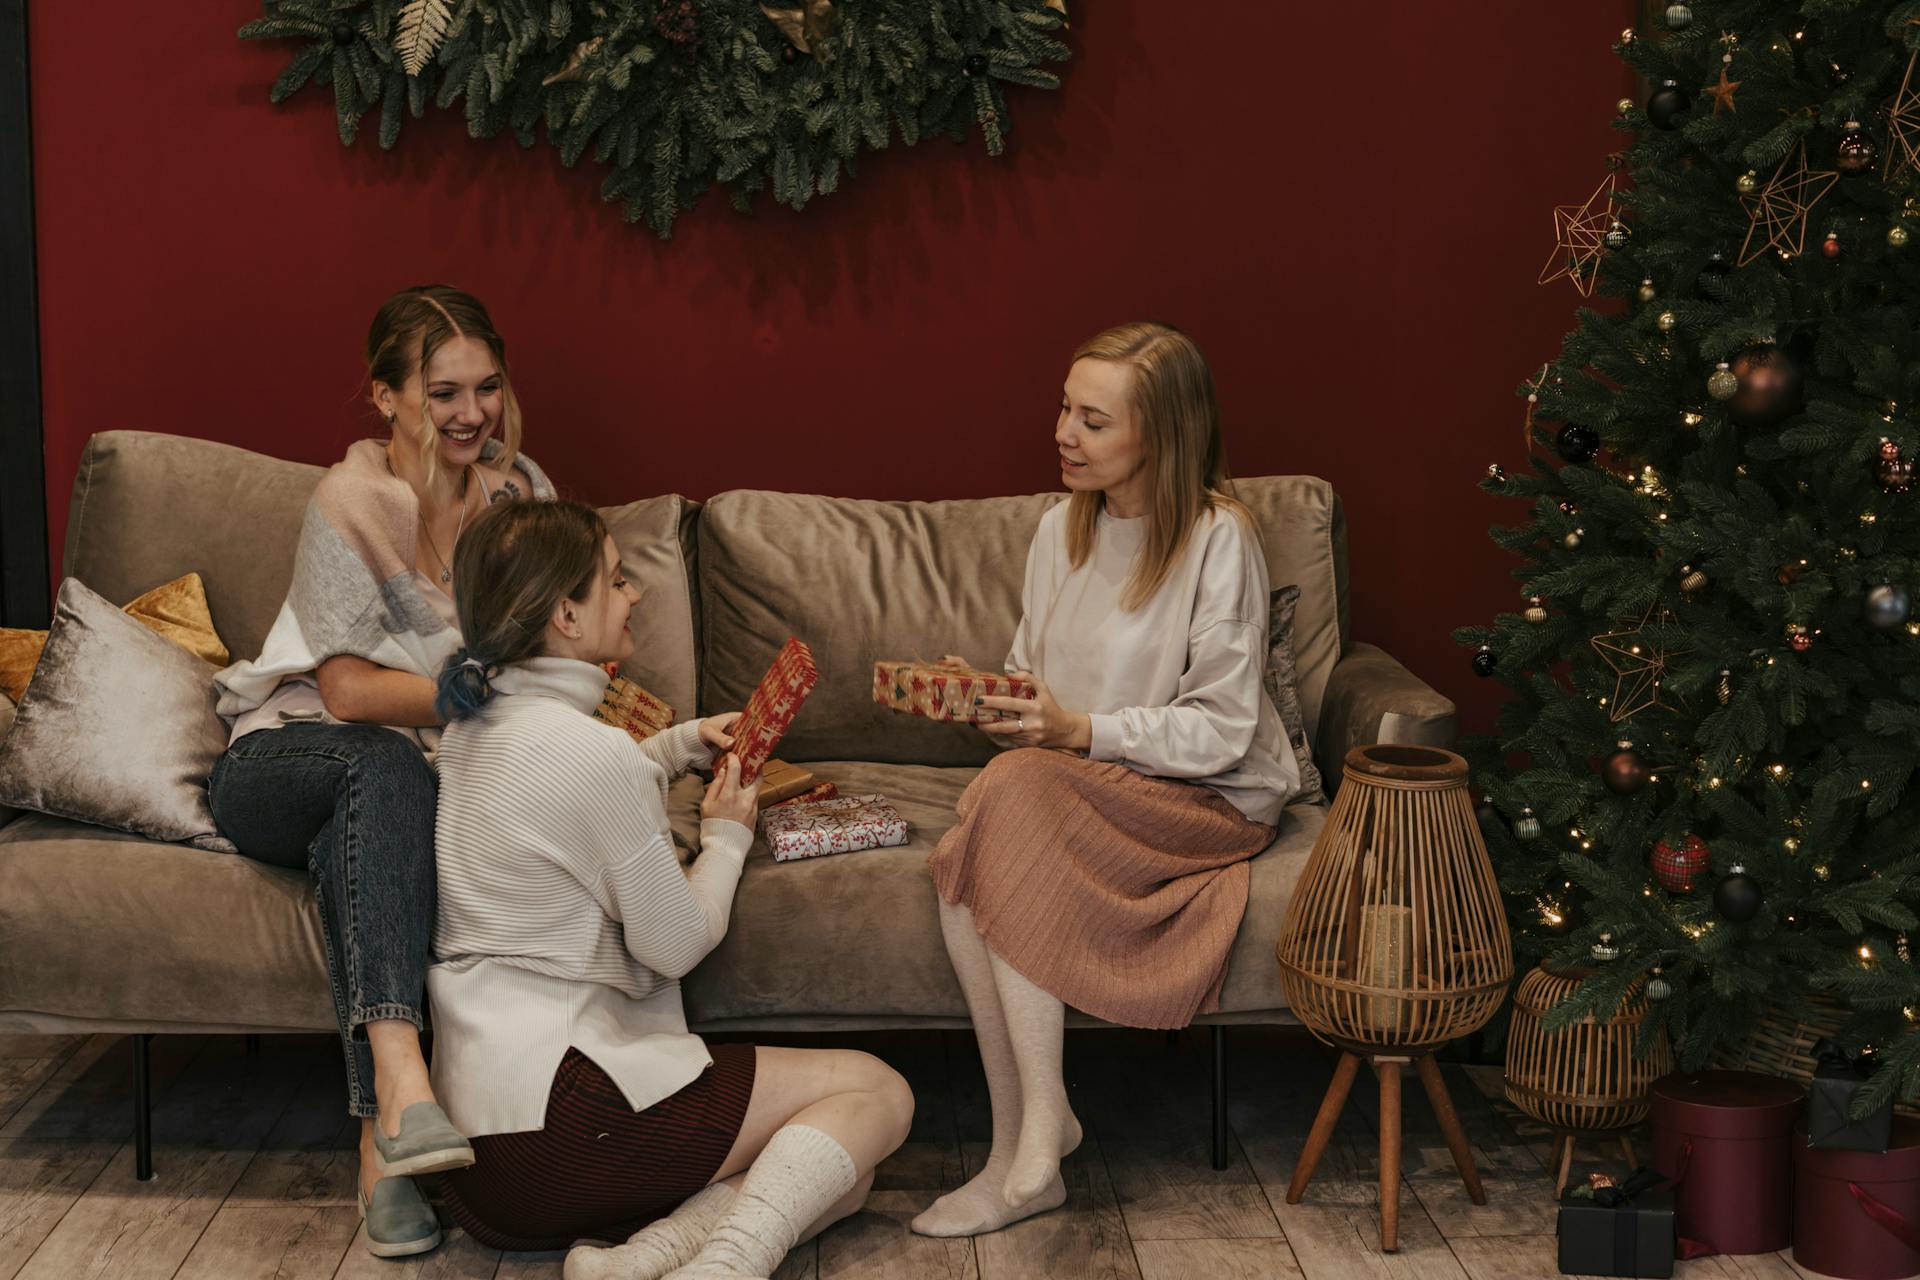 Des femmes dans un salon tenant des cadeaux de Noël | Source : Pexels